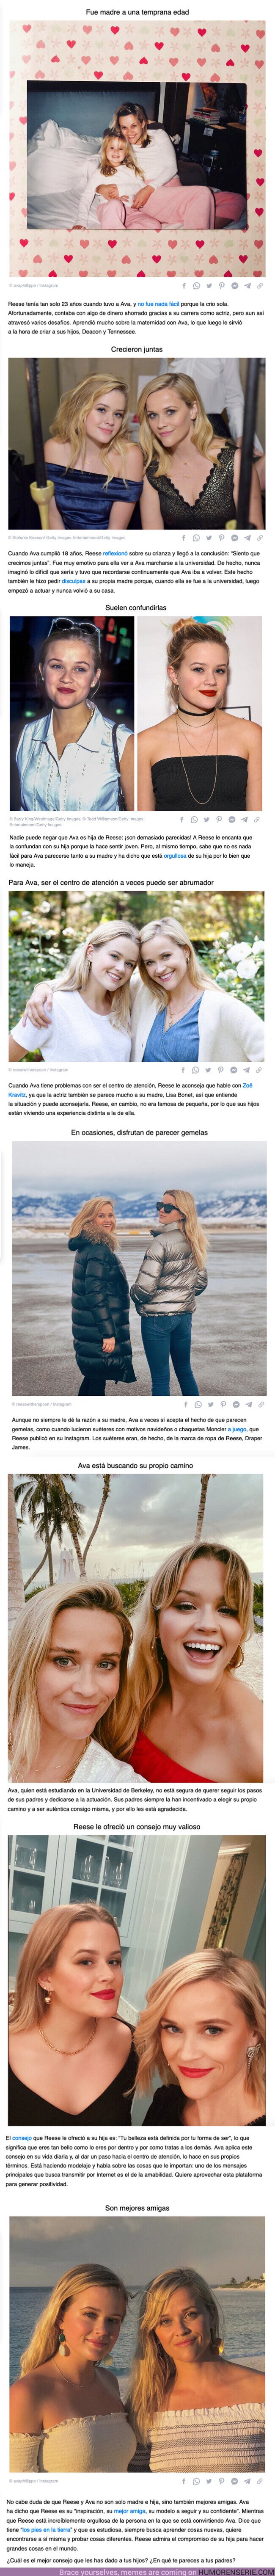 100558 - GALERÍA: Por qué Reese Witherspoon y su hija, que parece su gemela, tienen una relación tan única